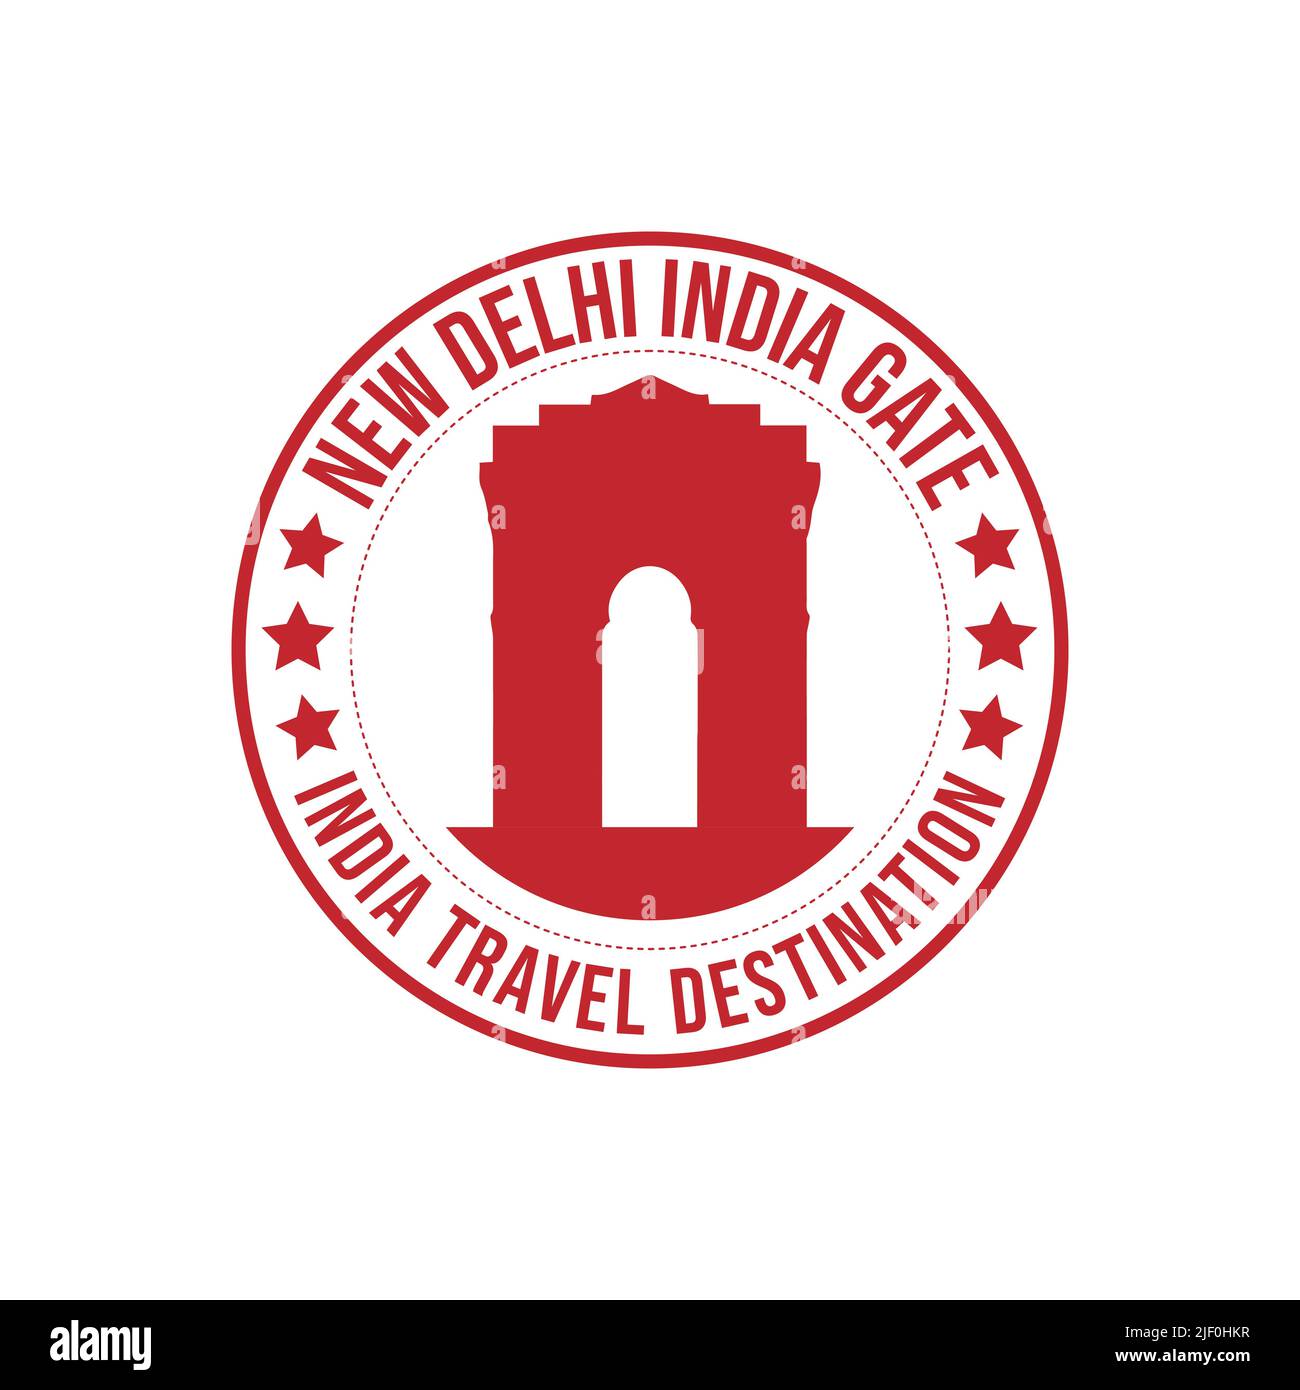 Kreis-Stempel mit dem Text India Gate travel Destination in der Marke geschrieben. Indien historisches Gebäude Reise Reiseziel Gummi Stempel ve Stock Vektor